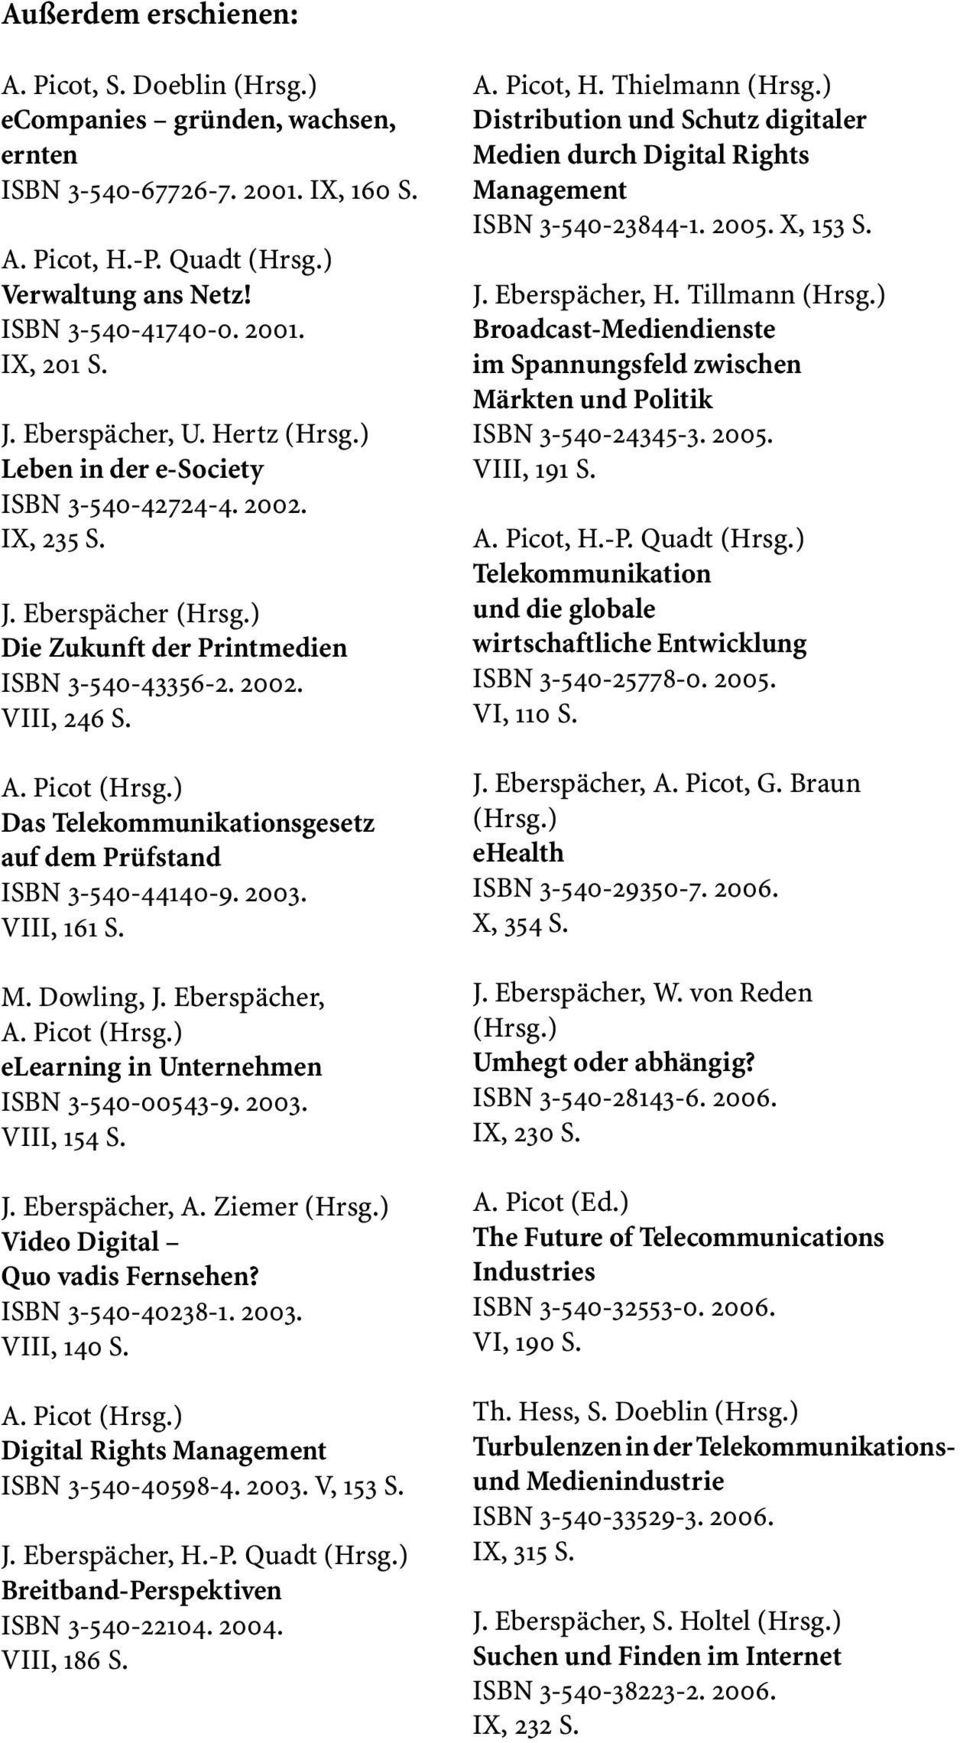 ) Das Telekommunikationsgesetz auf dem Prüfstand ISBN 3-540-44140-9. 2003. VIII, 161 S. M. Dowling, J. Eberspächer, A. Picot (Hrsg.) elearning in Unternehmen ISBN 3-540-00543-9. 2003. VIII, 154 S. J. Eberspächer, A. Ziemer (Hrsg.